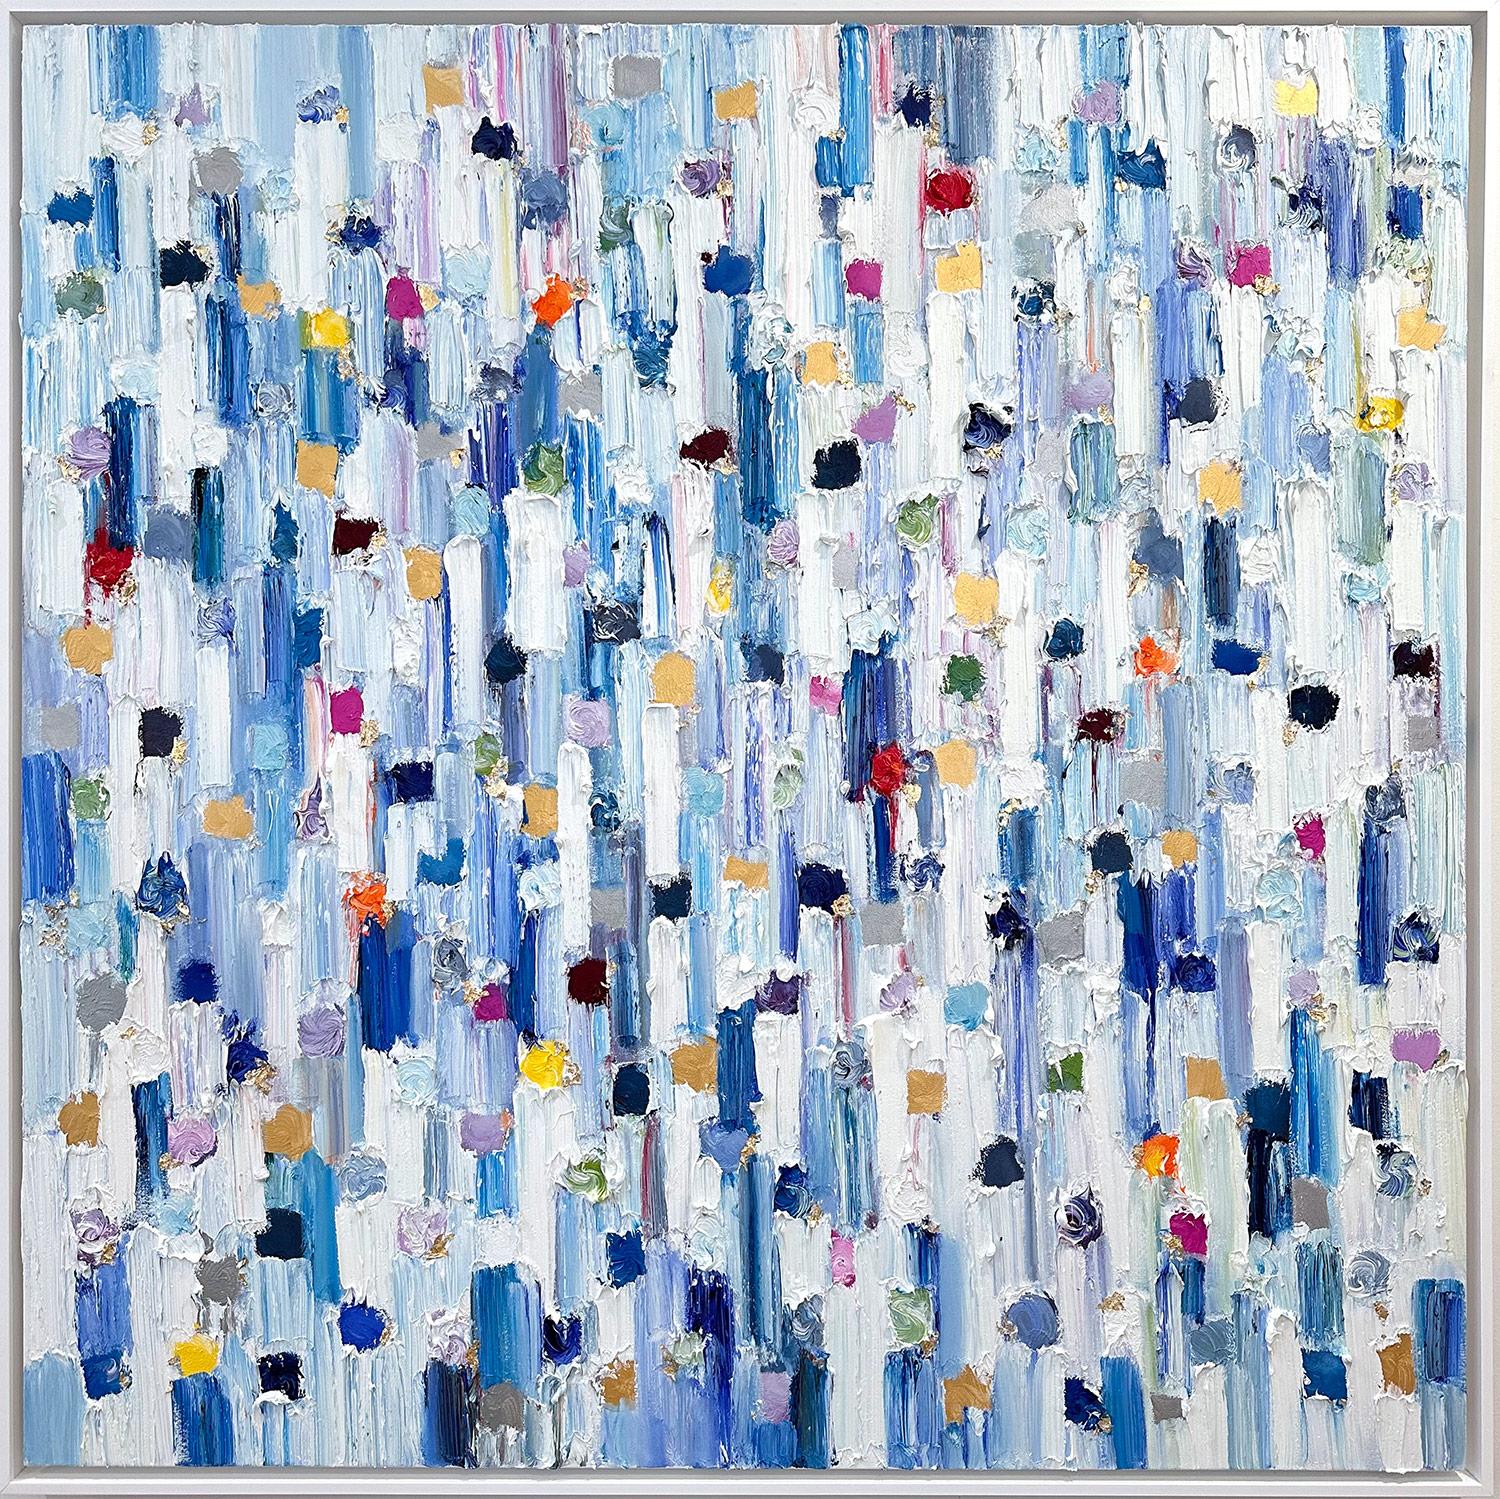 Abstract Painting Cindy Shaoul - "Dripping Dots - St. Barths" Peinture à l'huile contemporaine sur toile encadrée